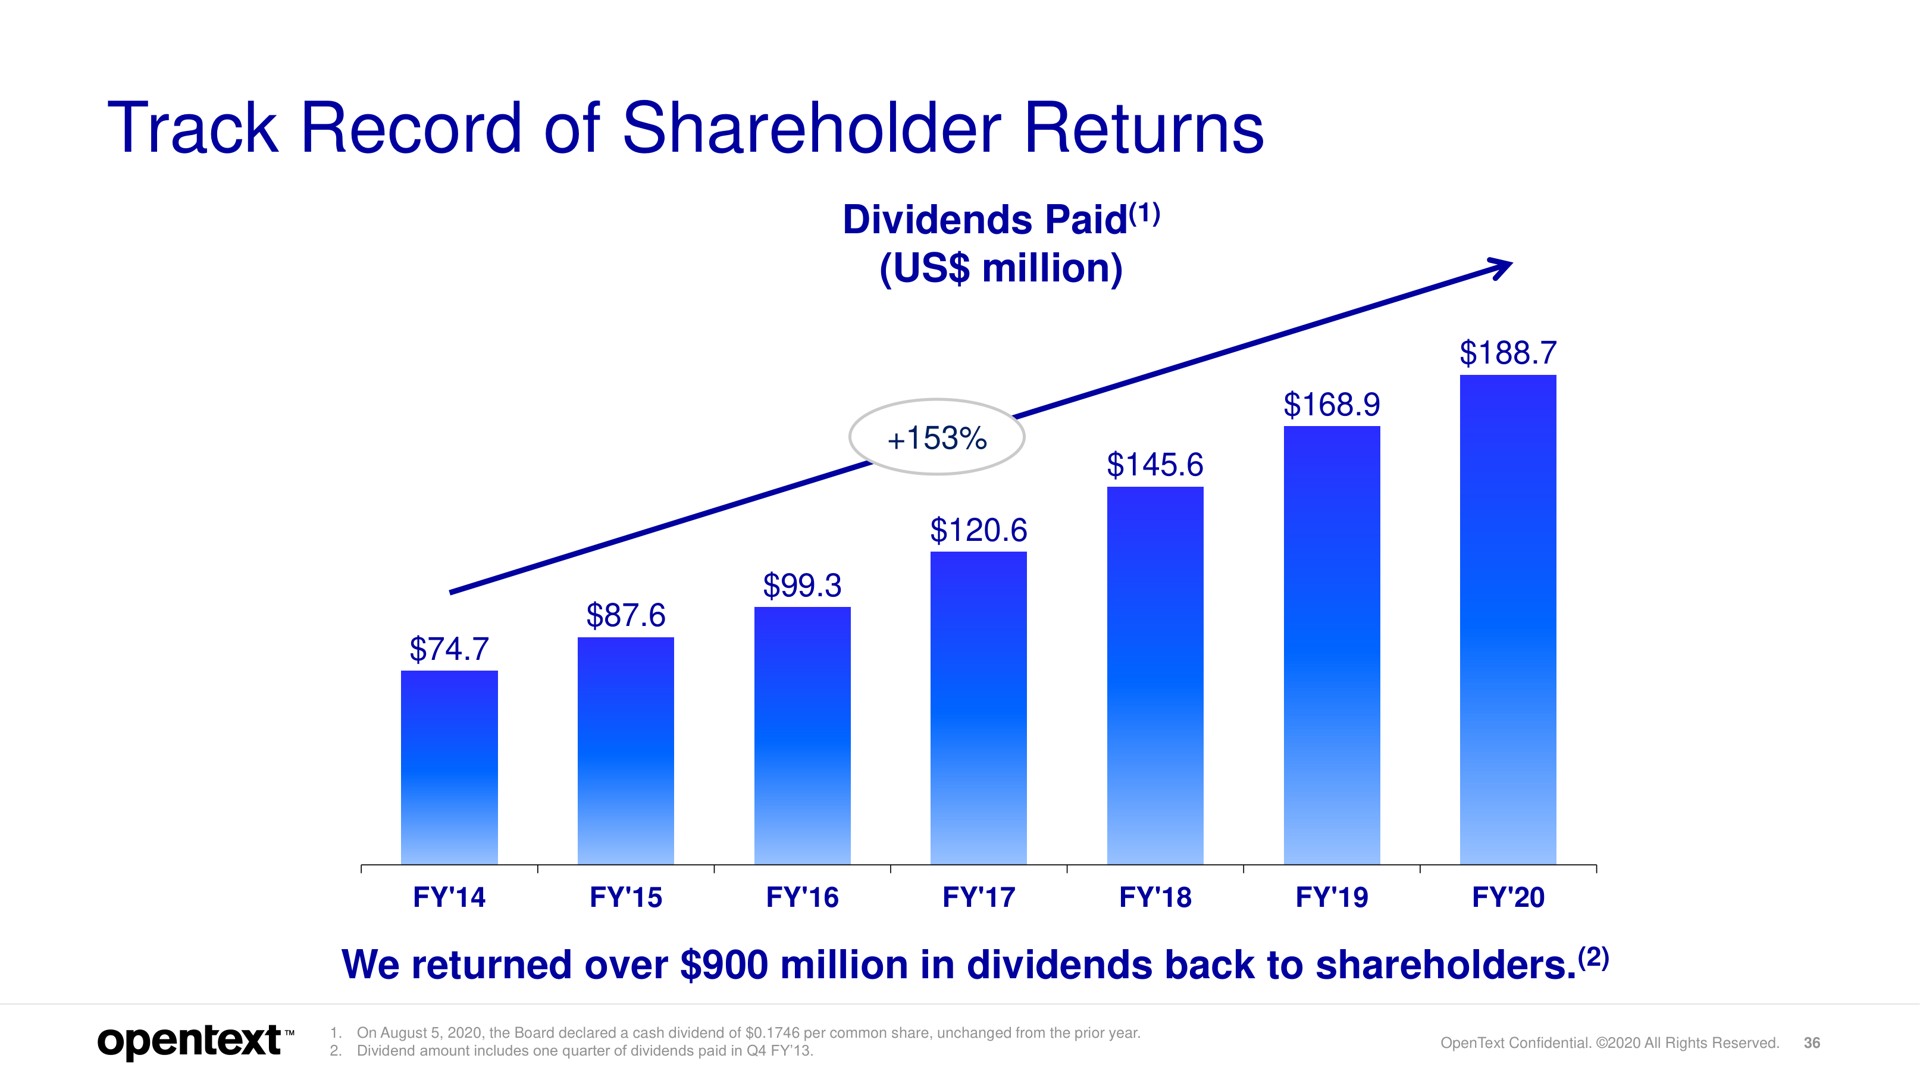 track record of shareholder returns | OpenText